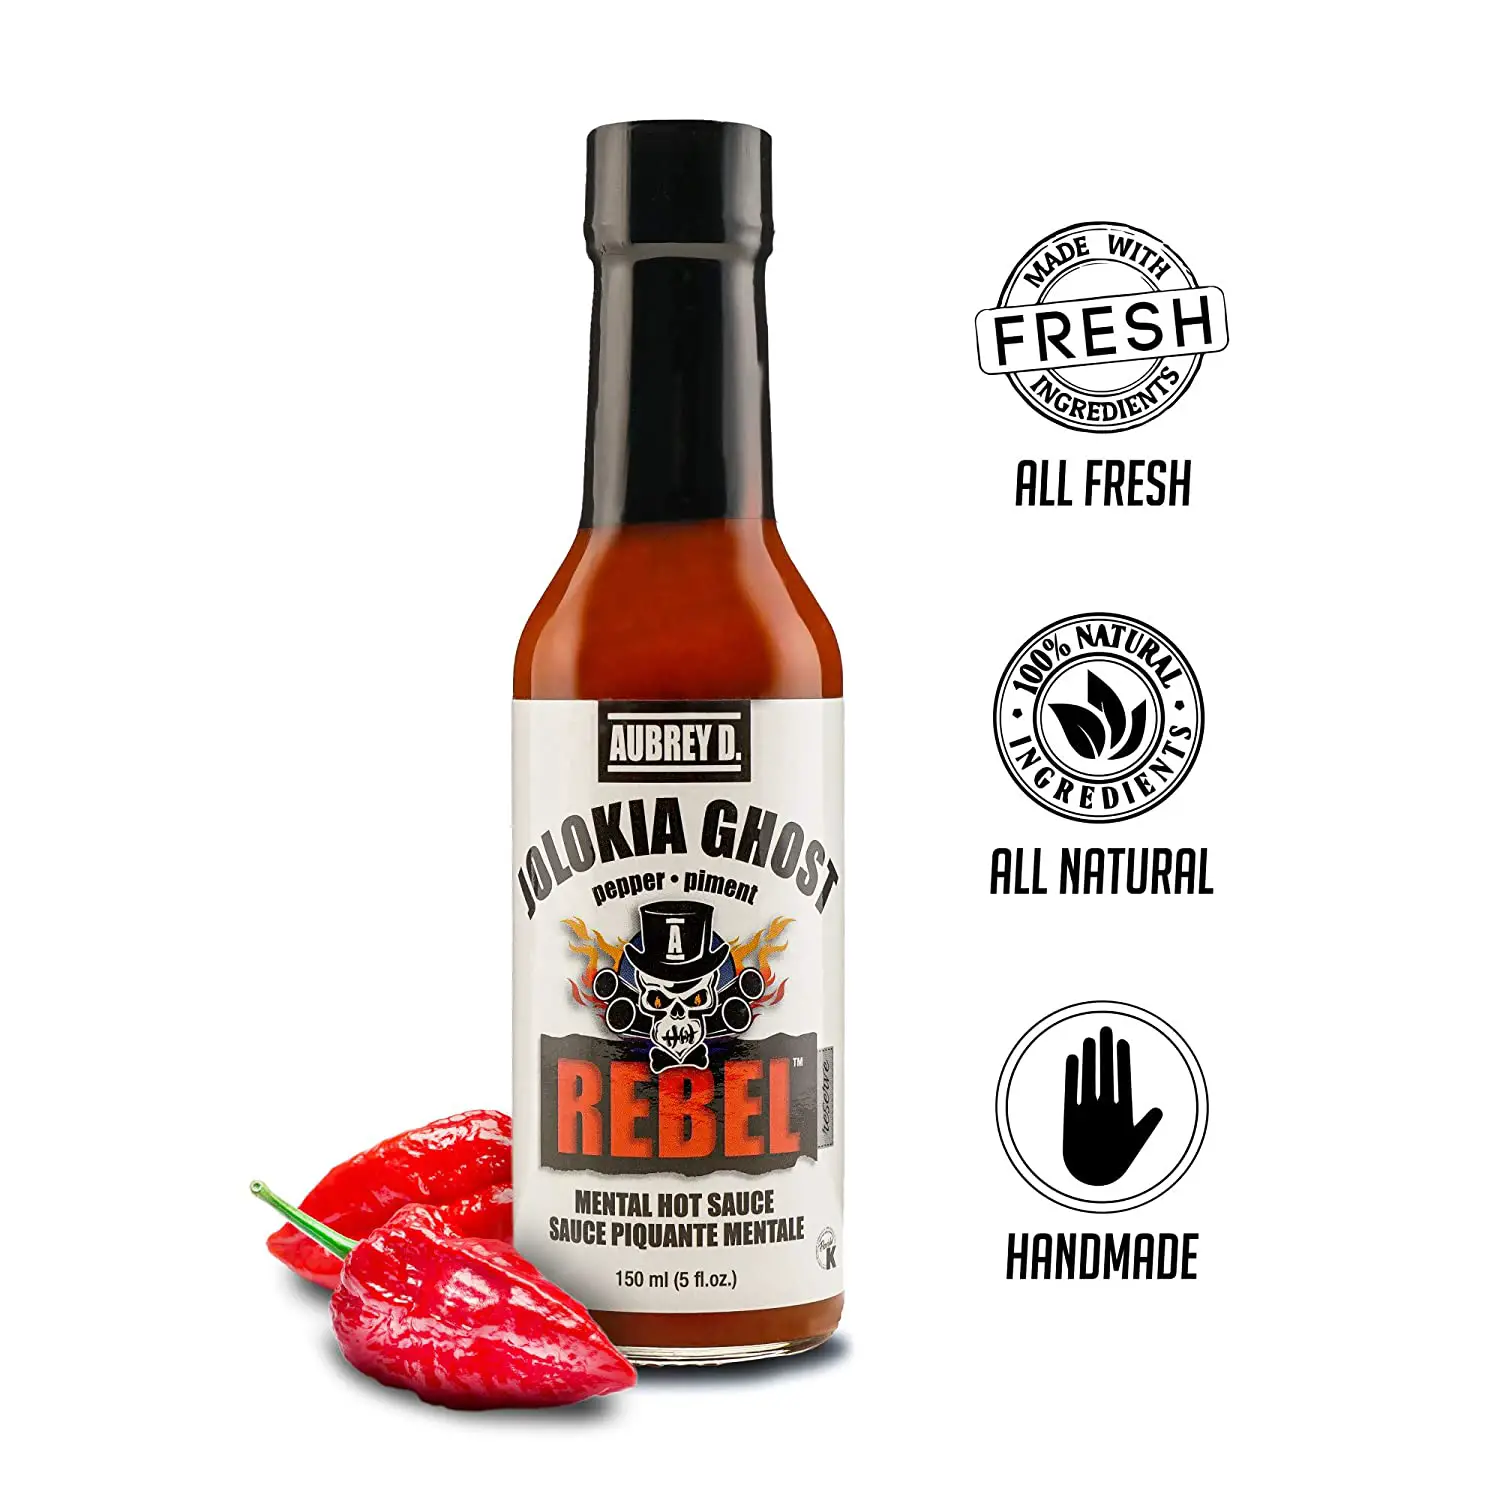 Aubrey D. Rebel Jolokia Ghost Hot Sauce, Hottest Natural ...